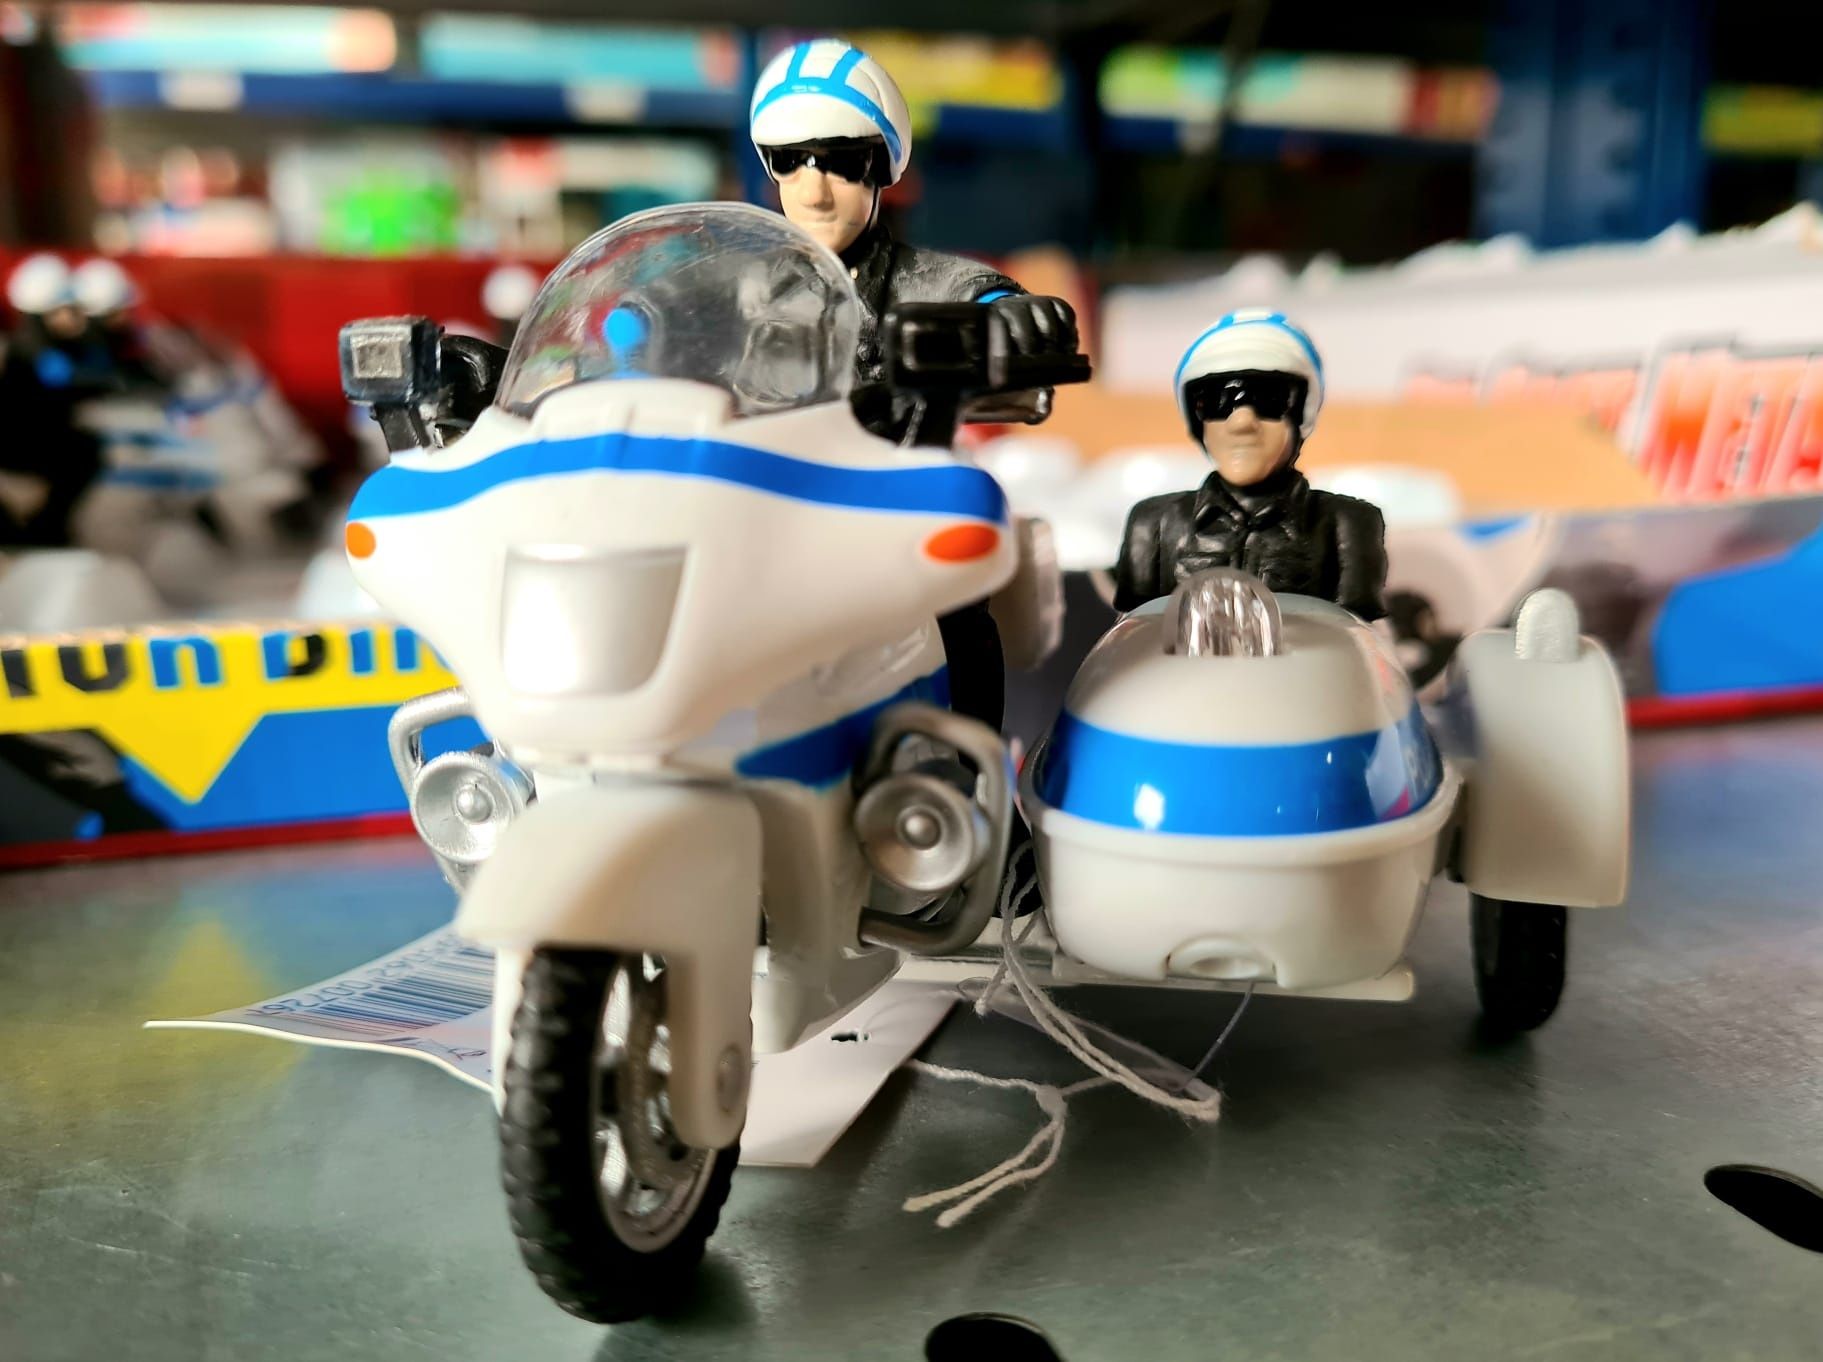 Nowy motocykl policyjny z napędem Policja zabawki